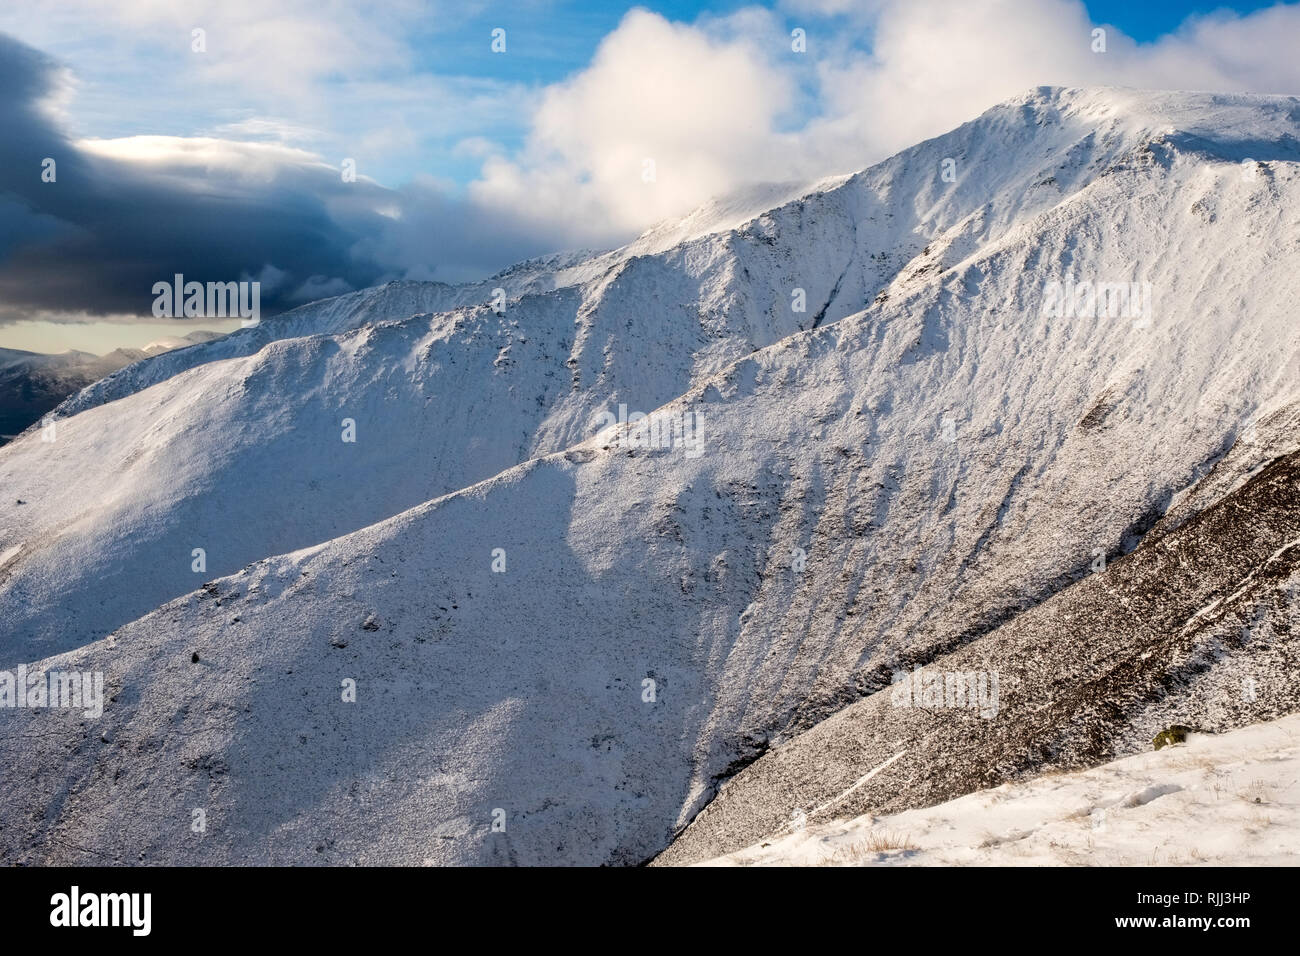 Die Kanten von Blencathra, ein Berg im Nationalpark Lake District, Cumbria, UK., im Winter Schnee gesehen Stockfoto